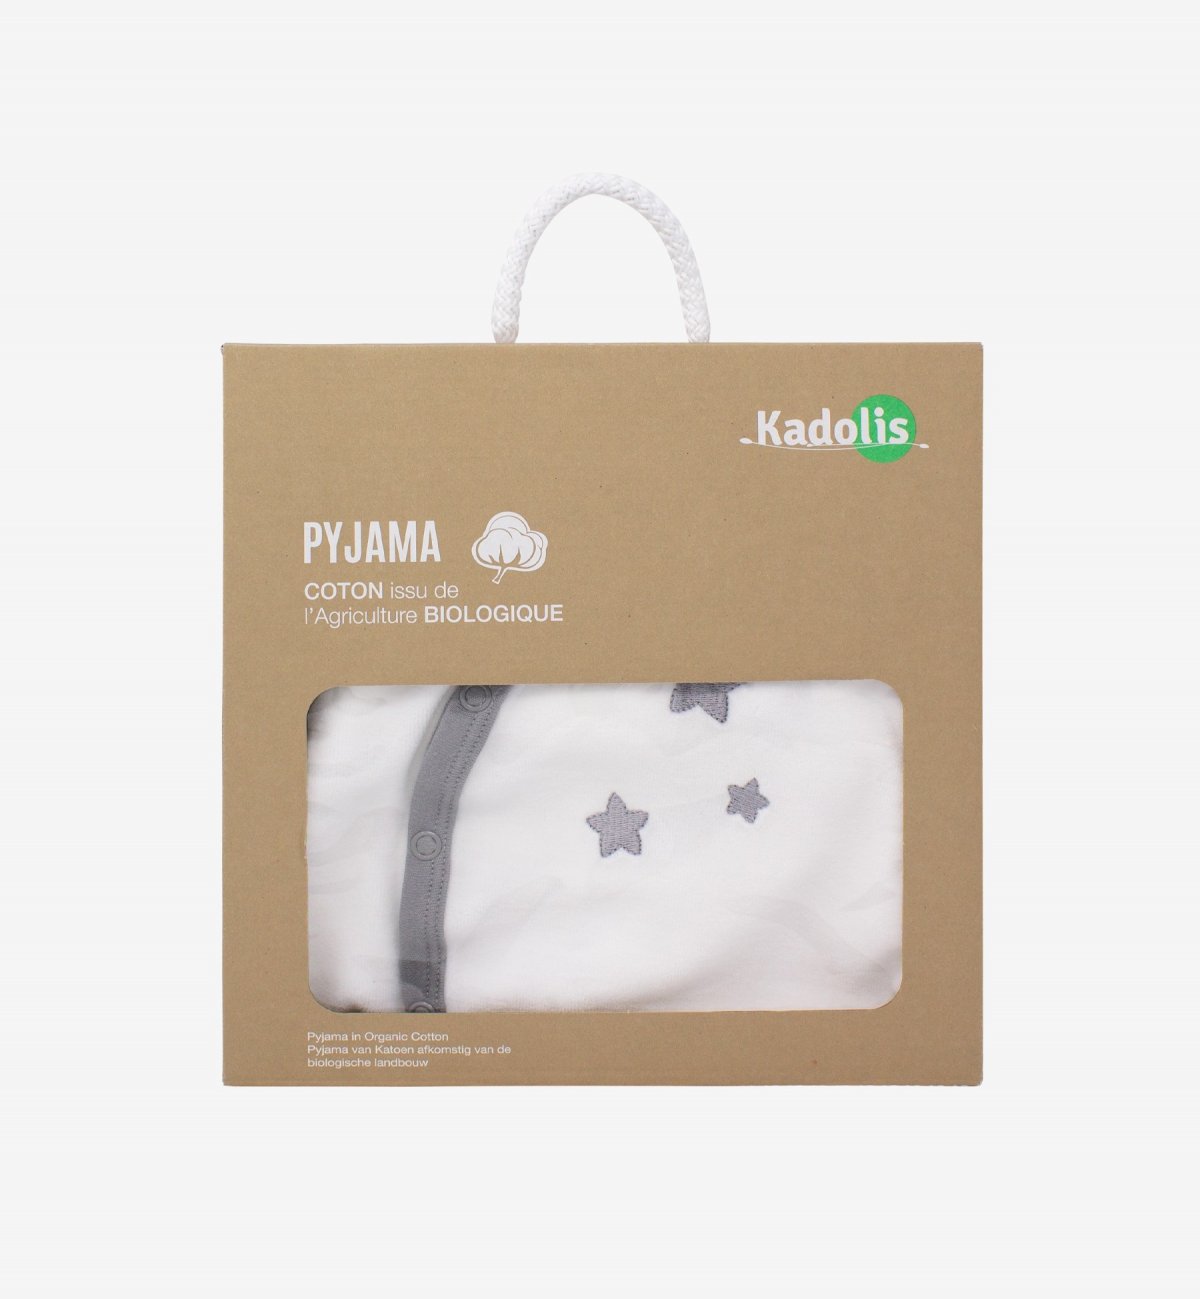 Baby pyjama in biokatoen wit met Kadolis-stermotieven in de kleur Biologisch Katoen